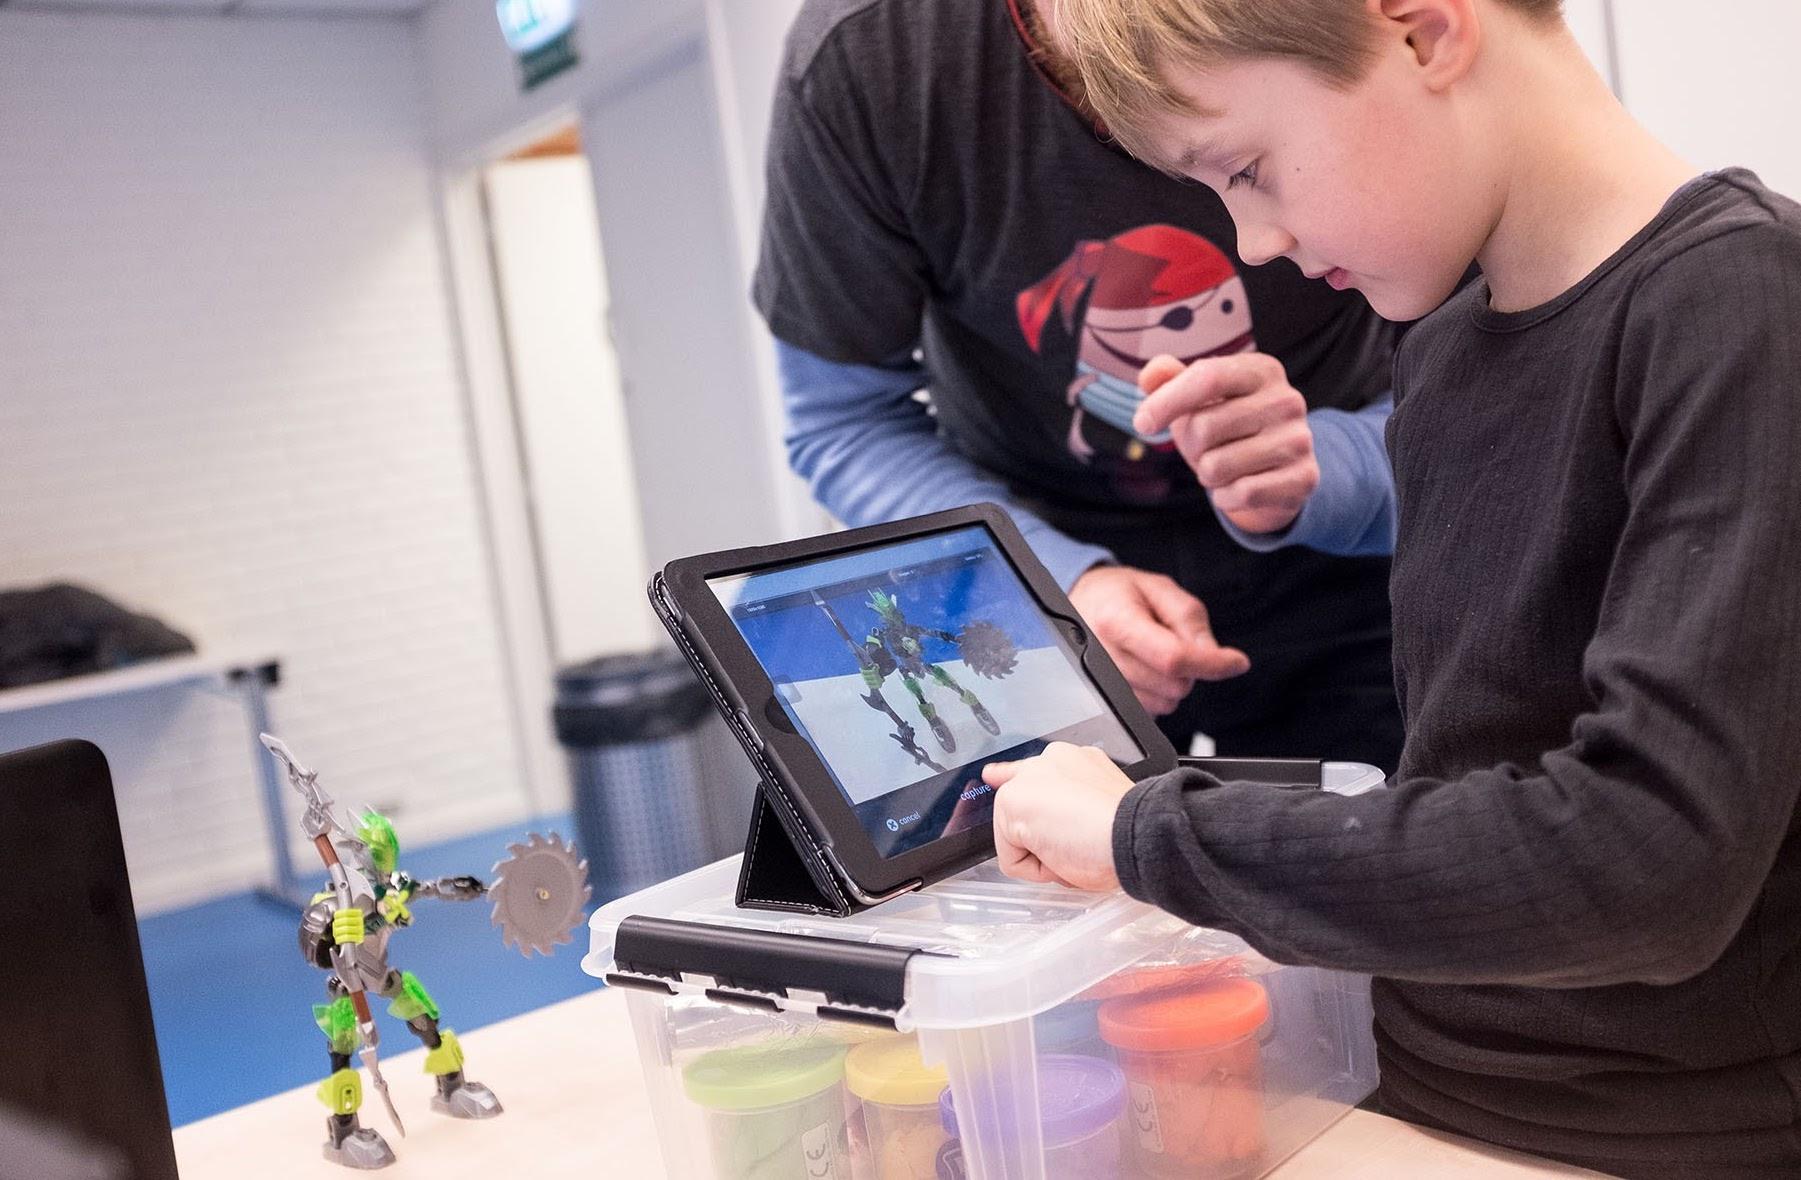 I Coding Pirates har vi gode erfaringer med at skabe it-kreative aktiviteter for børn. Vi arbejder både med skærme og andre former for teknologier som for eksempel 3D-print og robotteknologi, skriver formand og bestyrelsesmedlem.